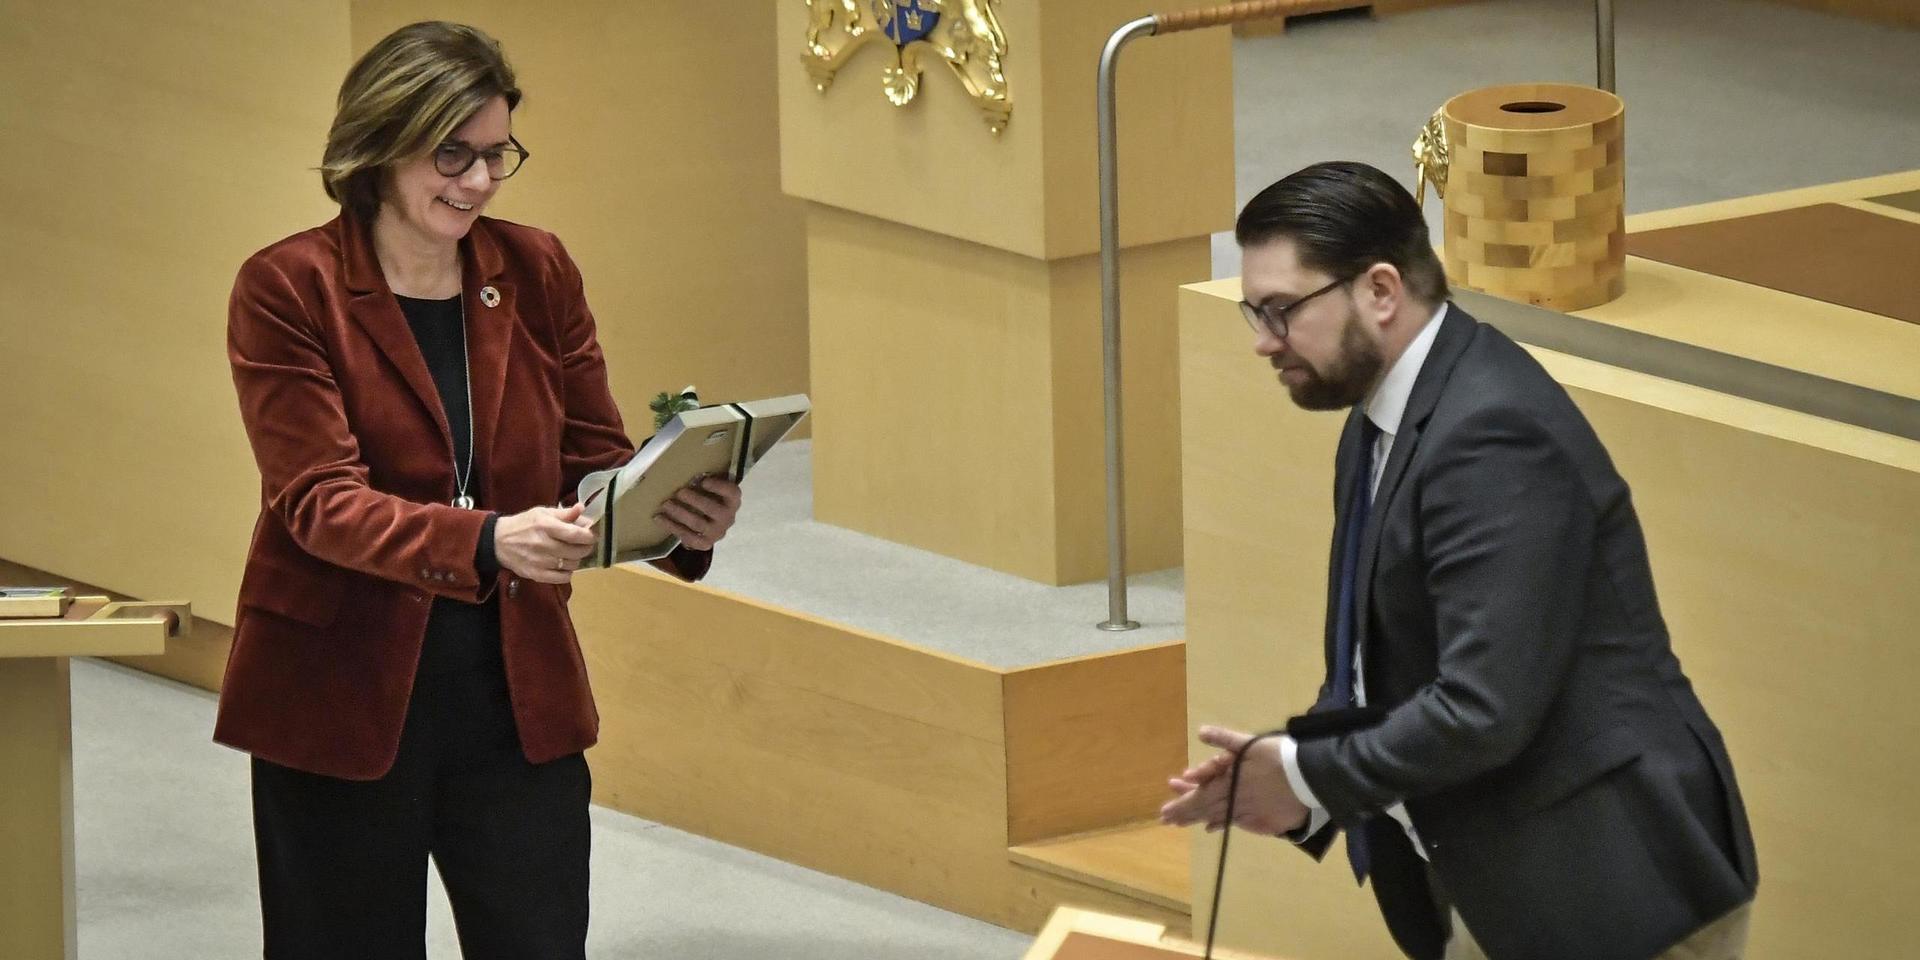 Miljöpartiets språkrör Isabella Lövin (tv) gjorde sin sista partiledardebatt och avtackades med en present av Sverigedemokraternas partiledare Jimmie Åkesson. Under debatten anklagade dock båda den andre för att bidra till splittring och polarisering i samhället.